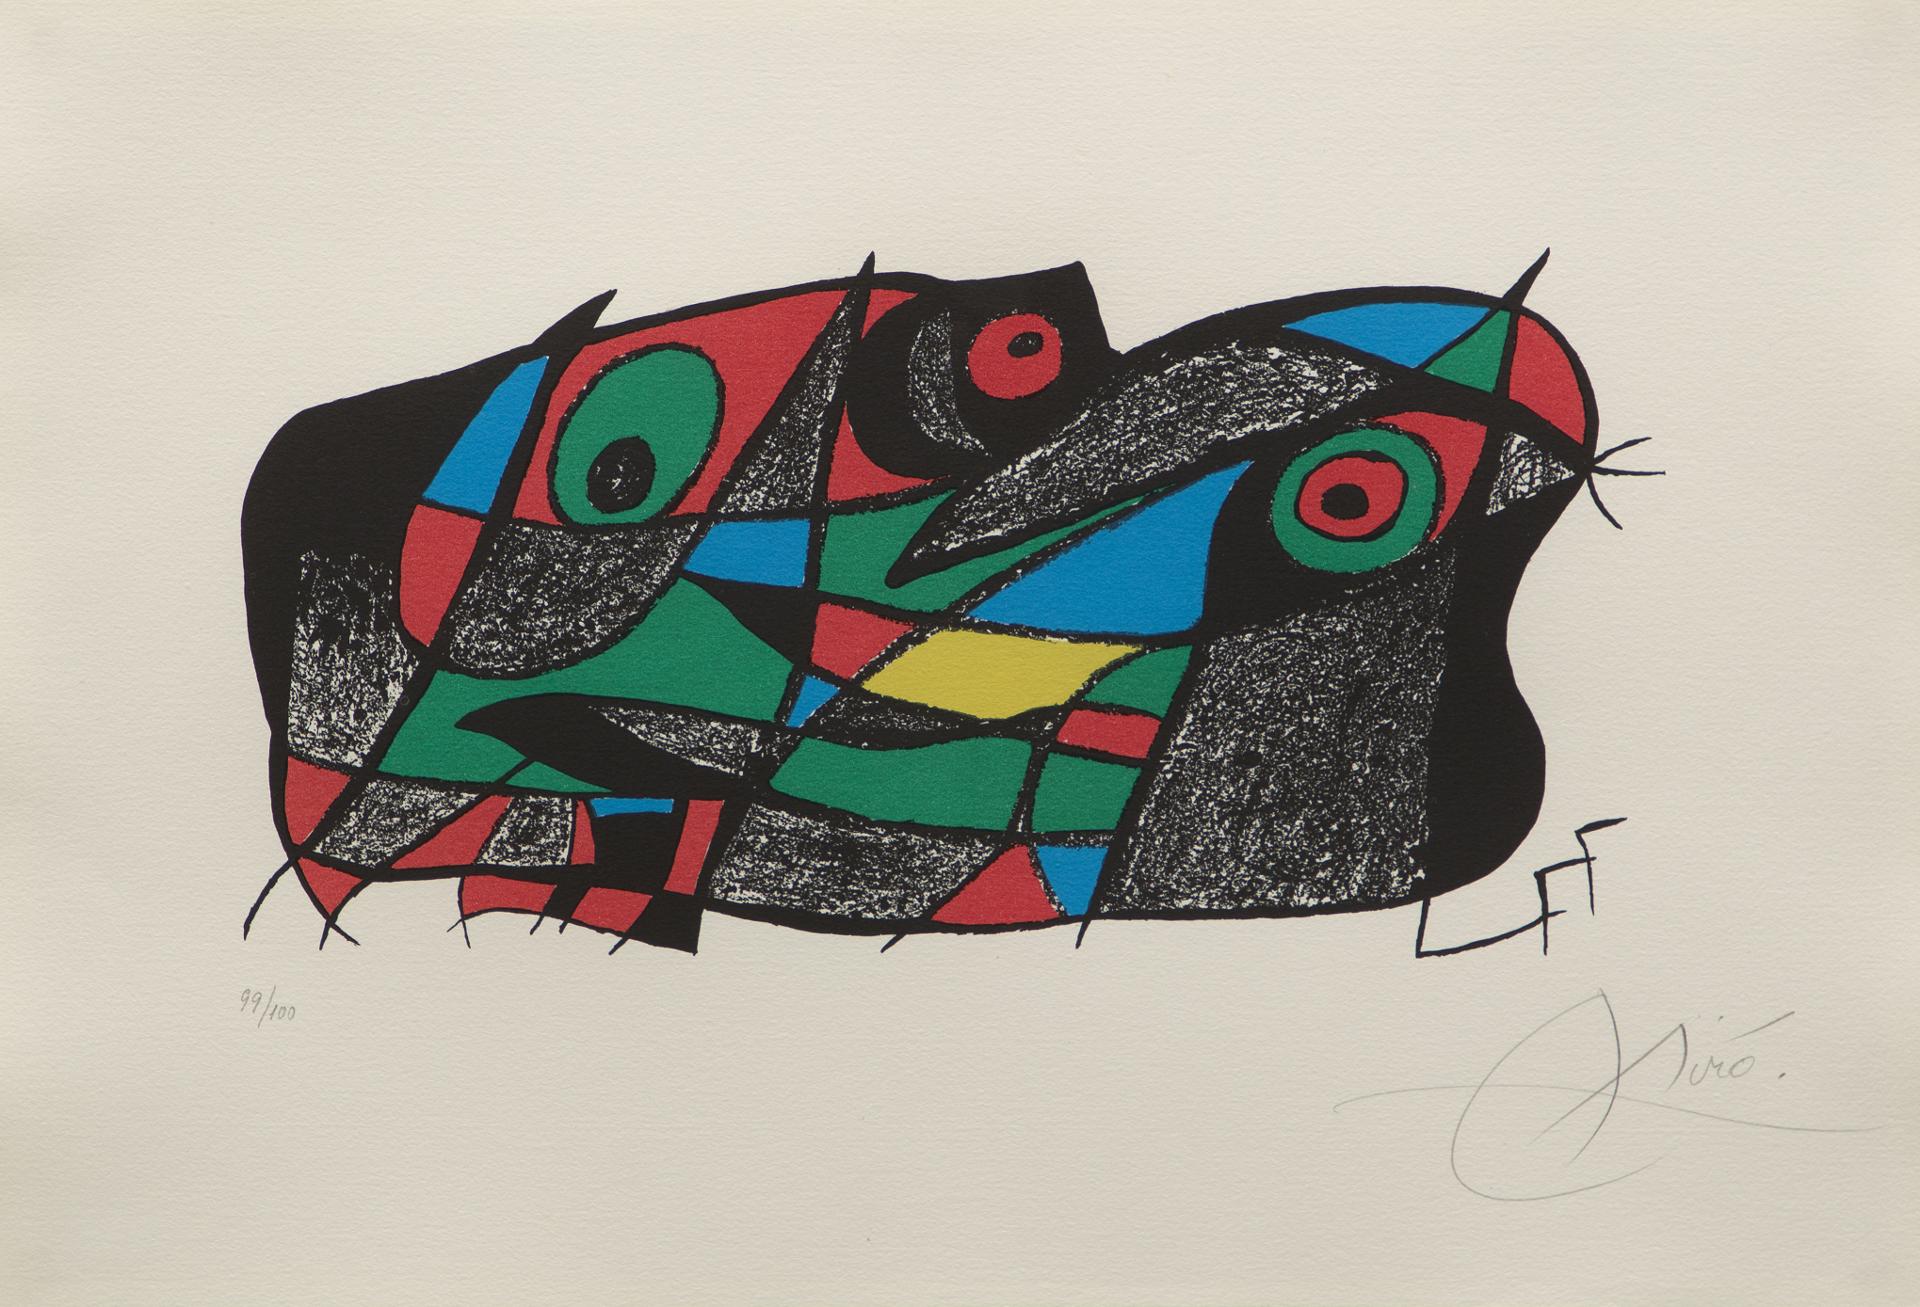 Joan Miró (1893-1983) - Suecia (de la série « Joan Miró esculptor », plaque nº 5 / from the series 